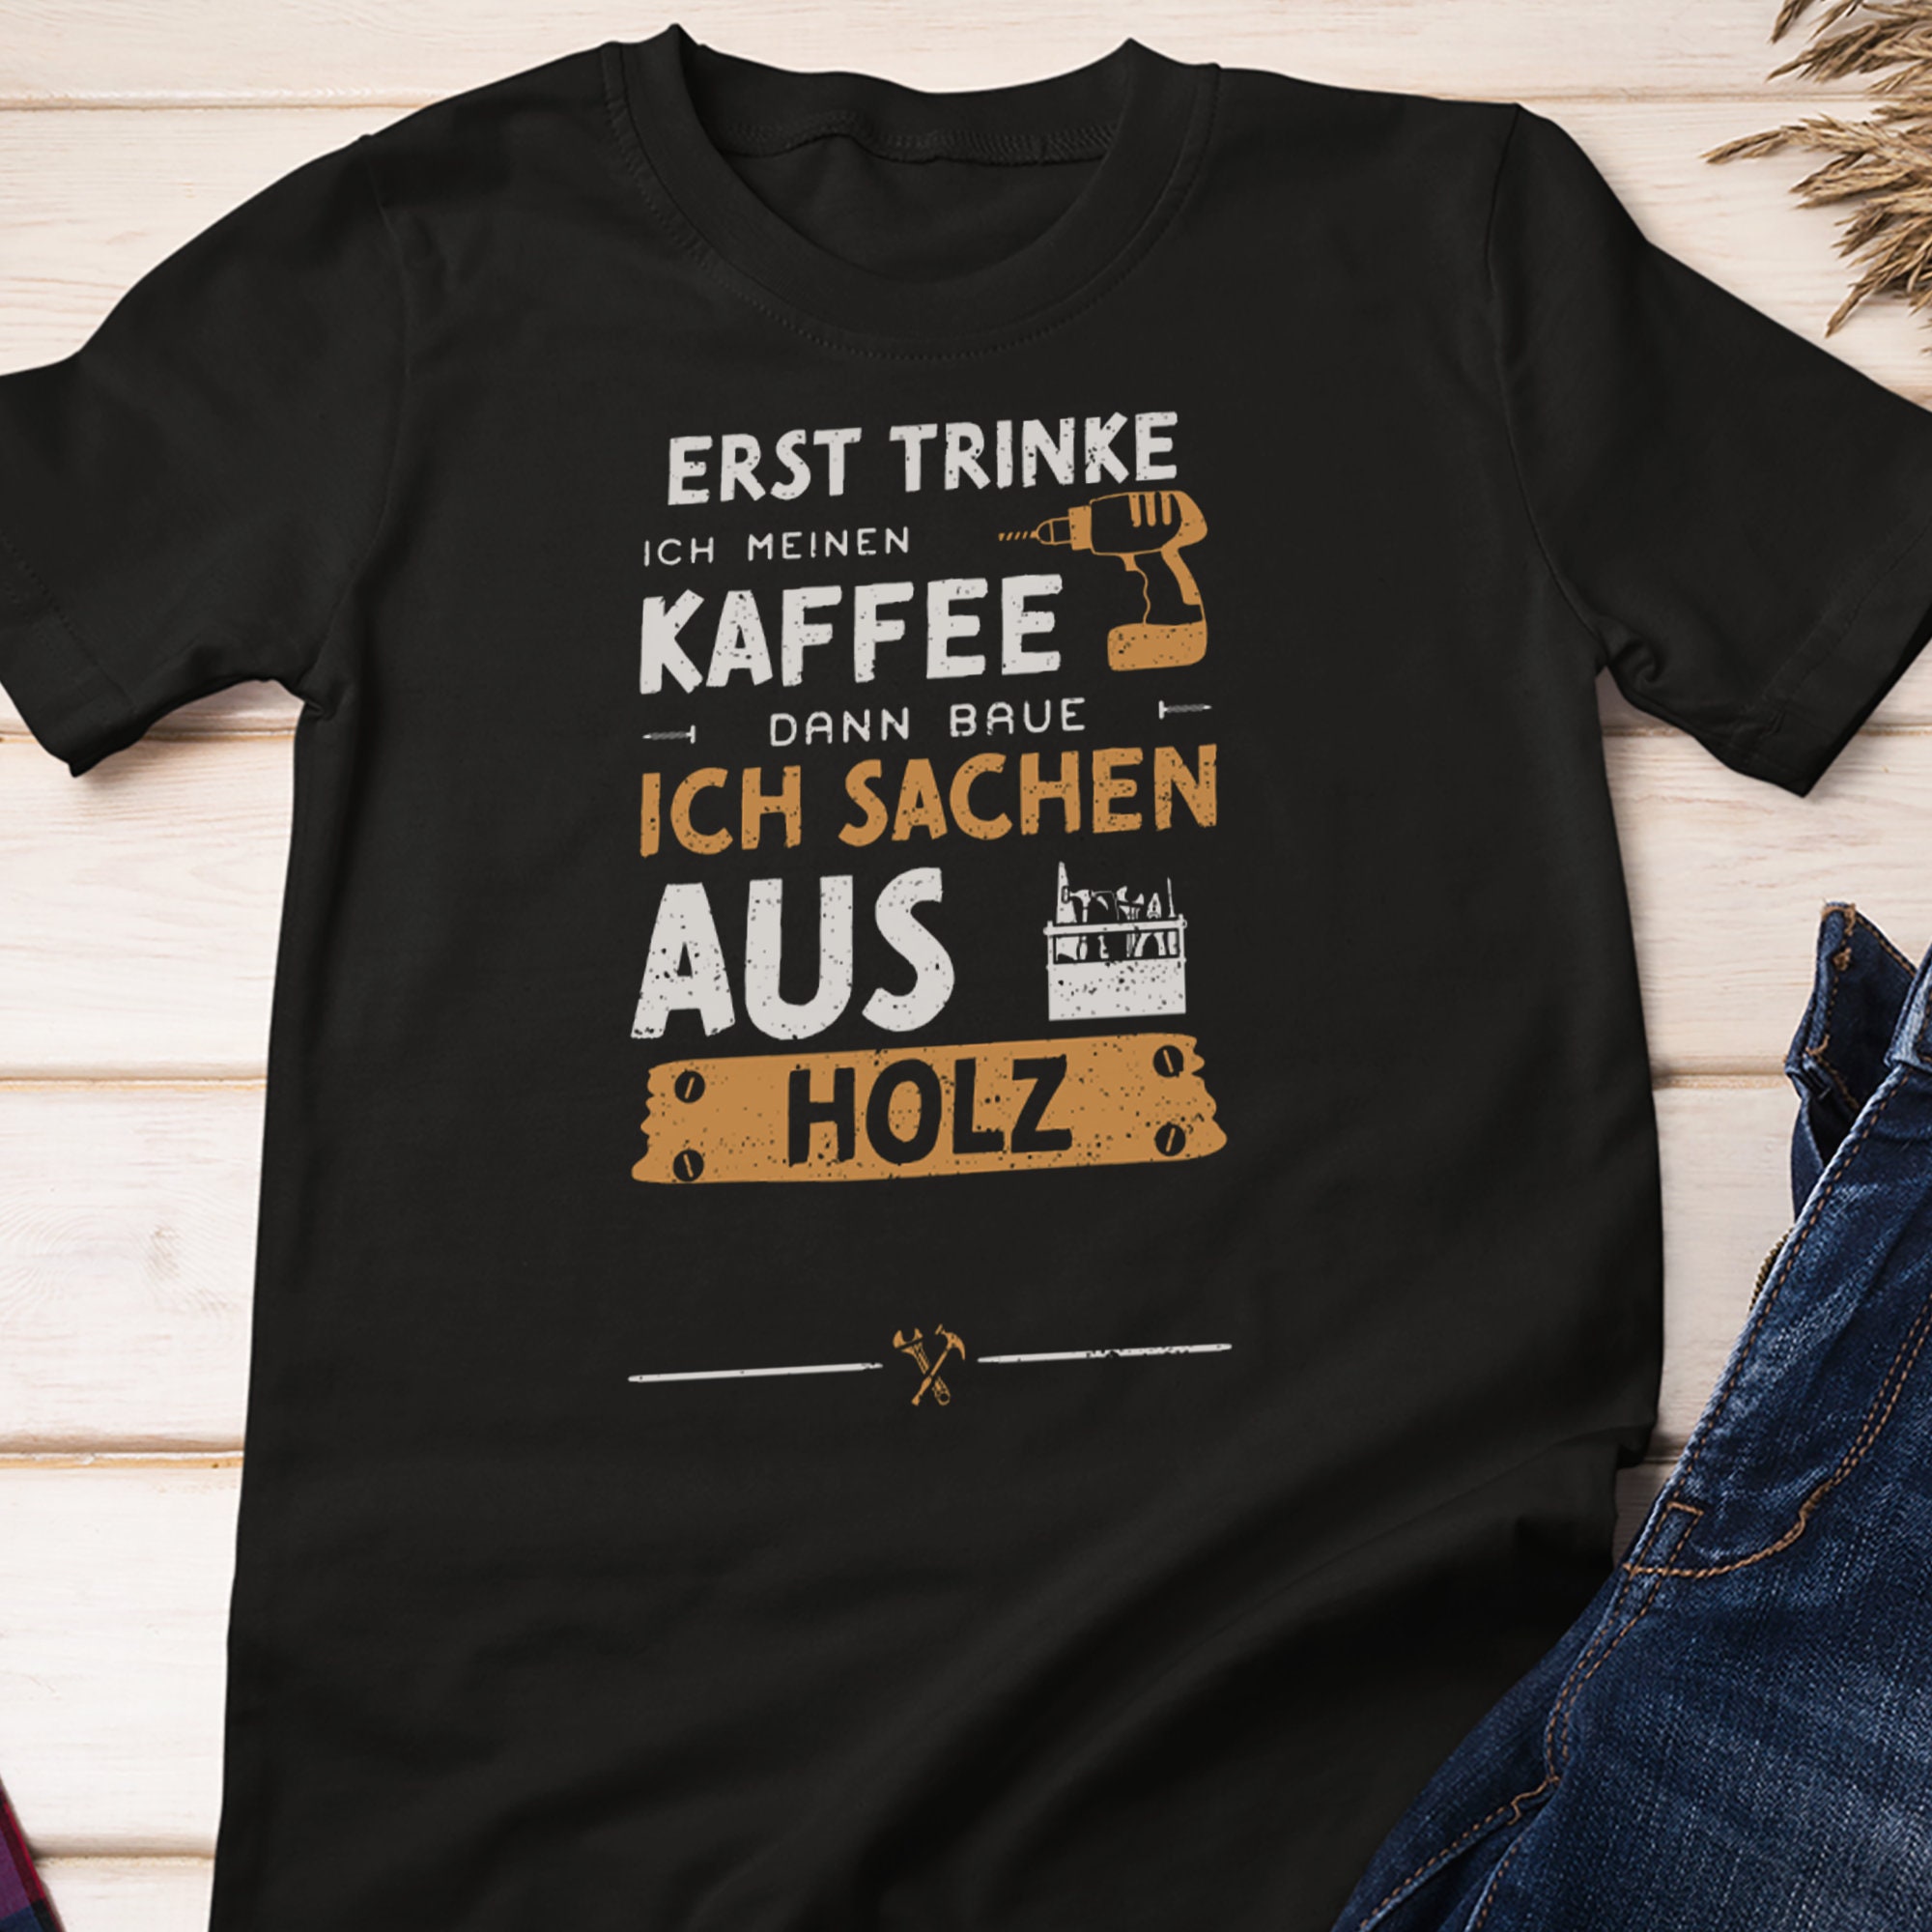 Kaffee trinken shirt - .de